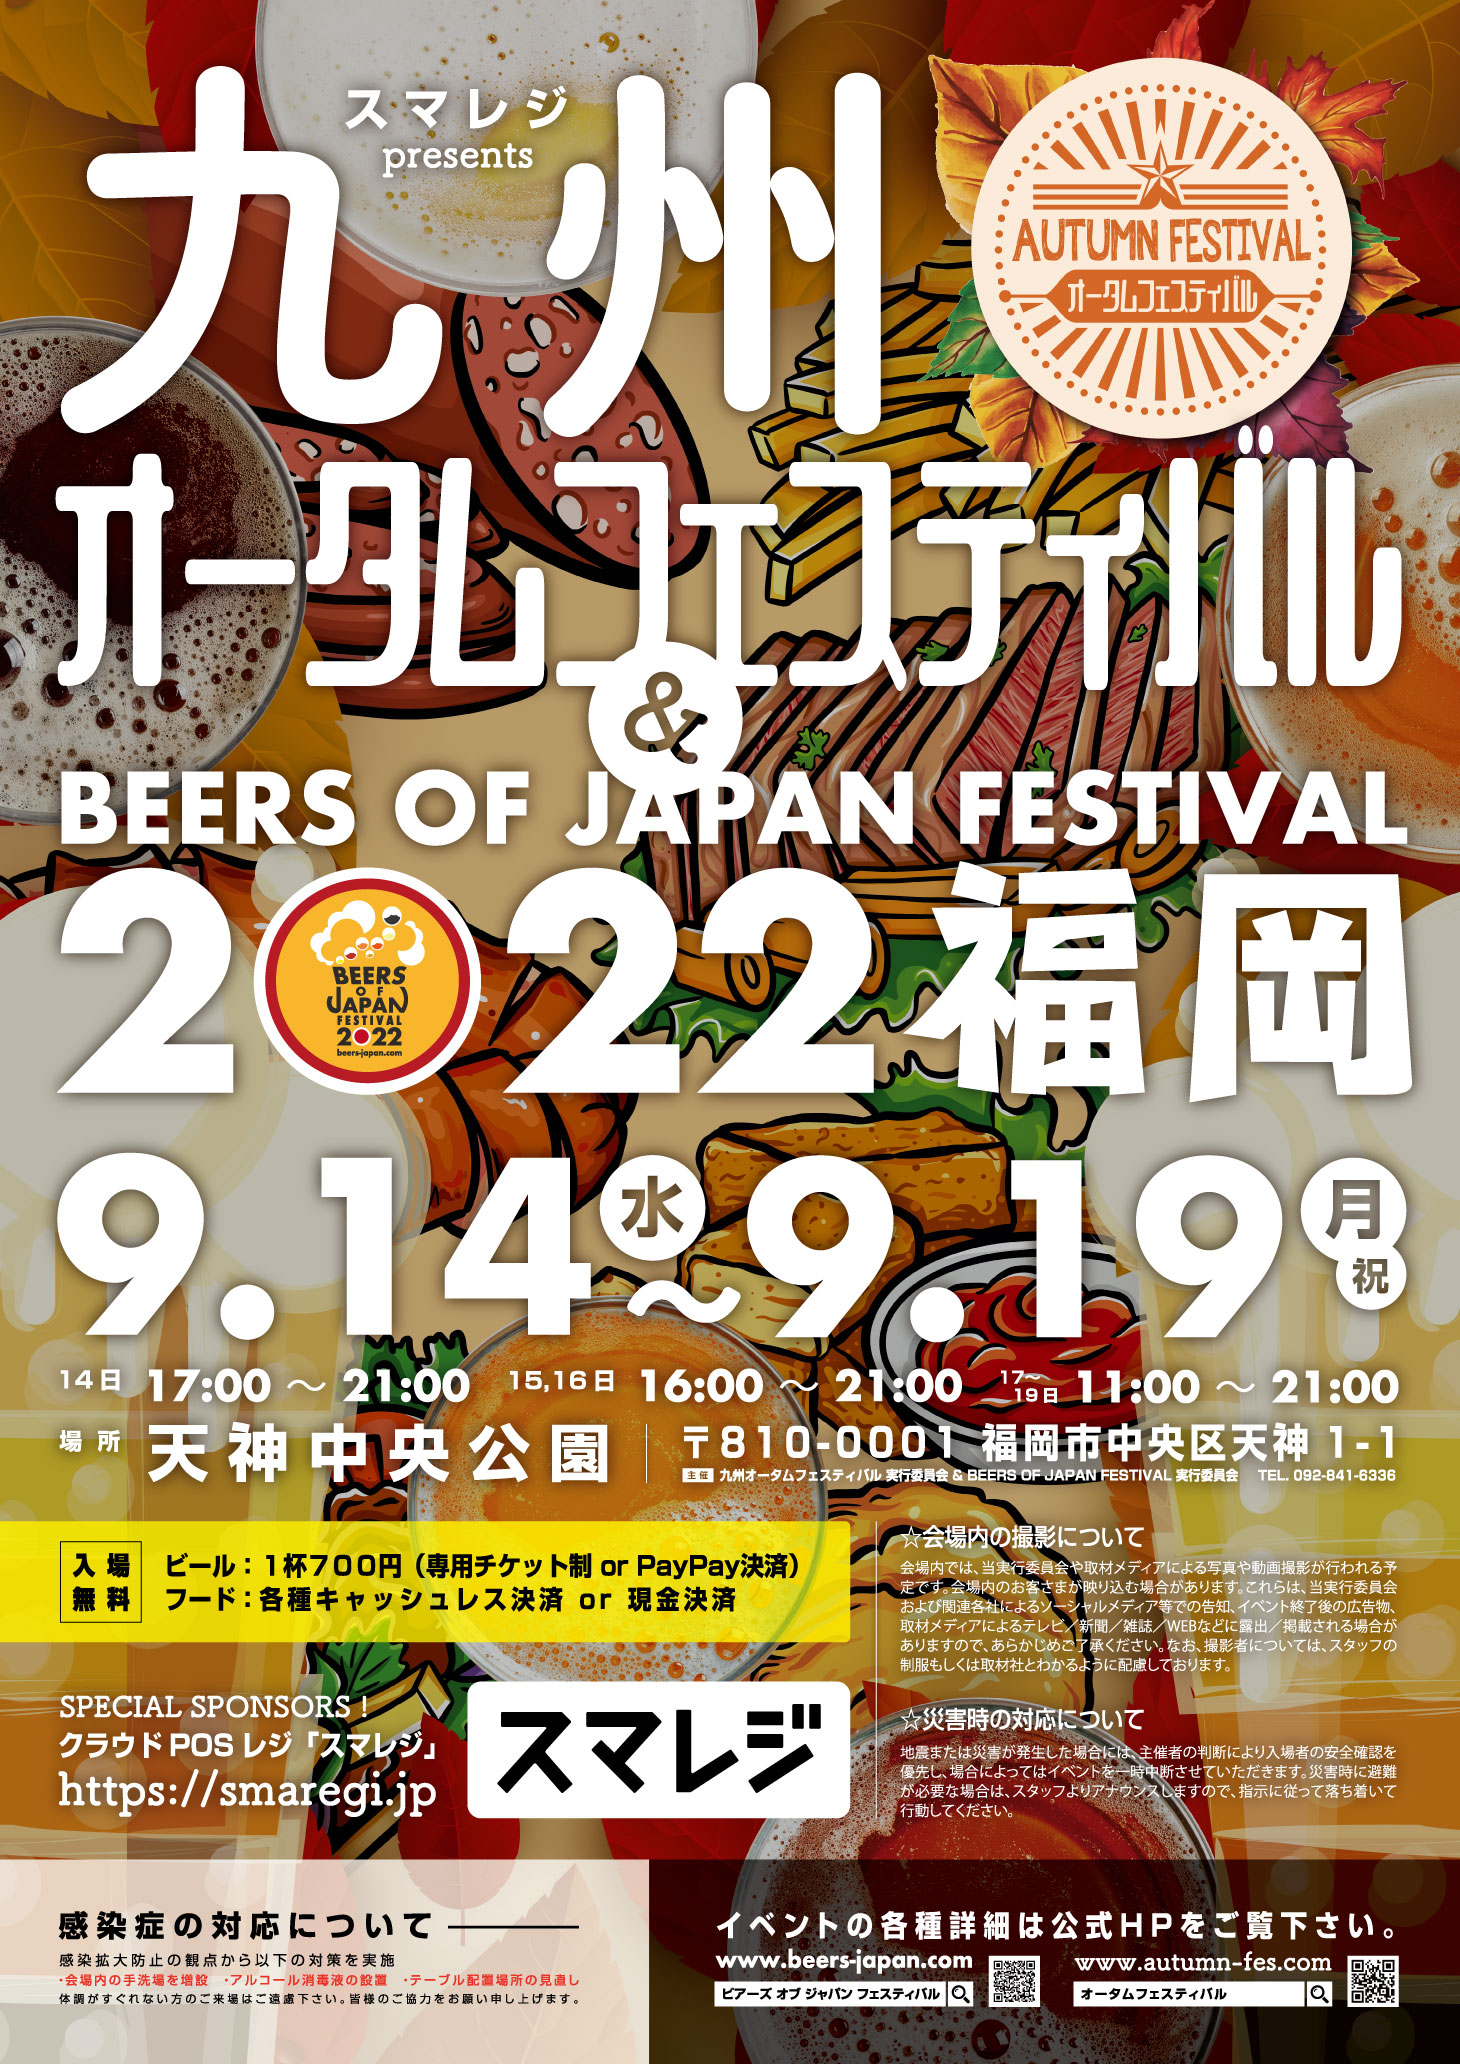 スマレジ presents 九州オータムフェスティバル & BEERS OF JAPAN FESTIVAL 2022 福岡、9月14日から開催。